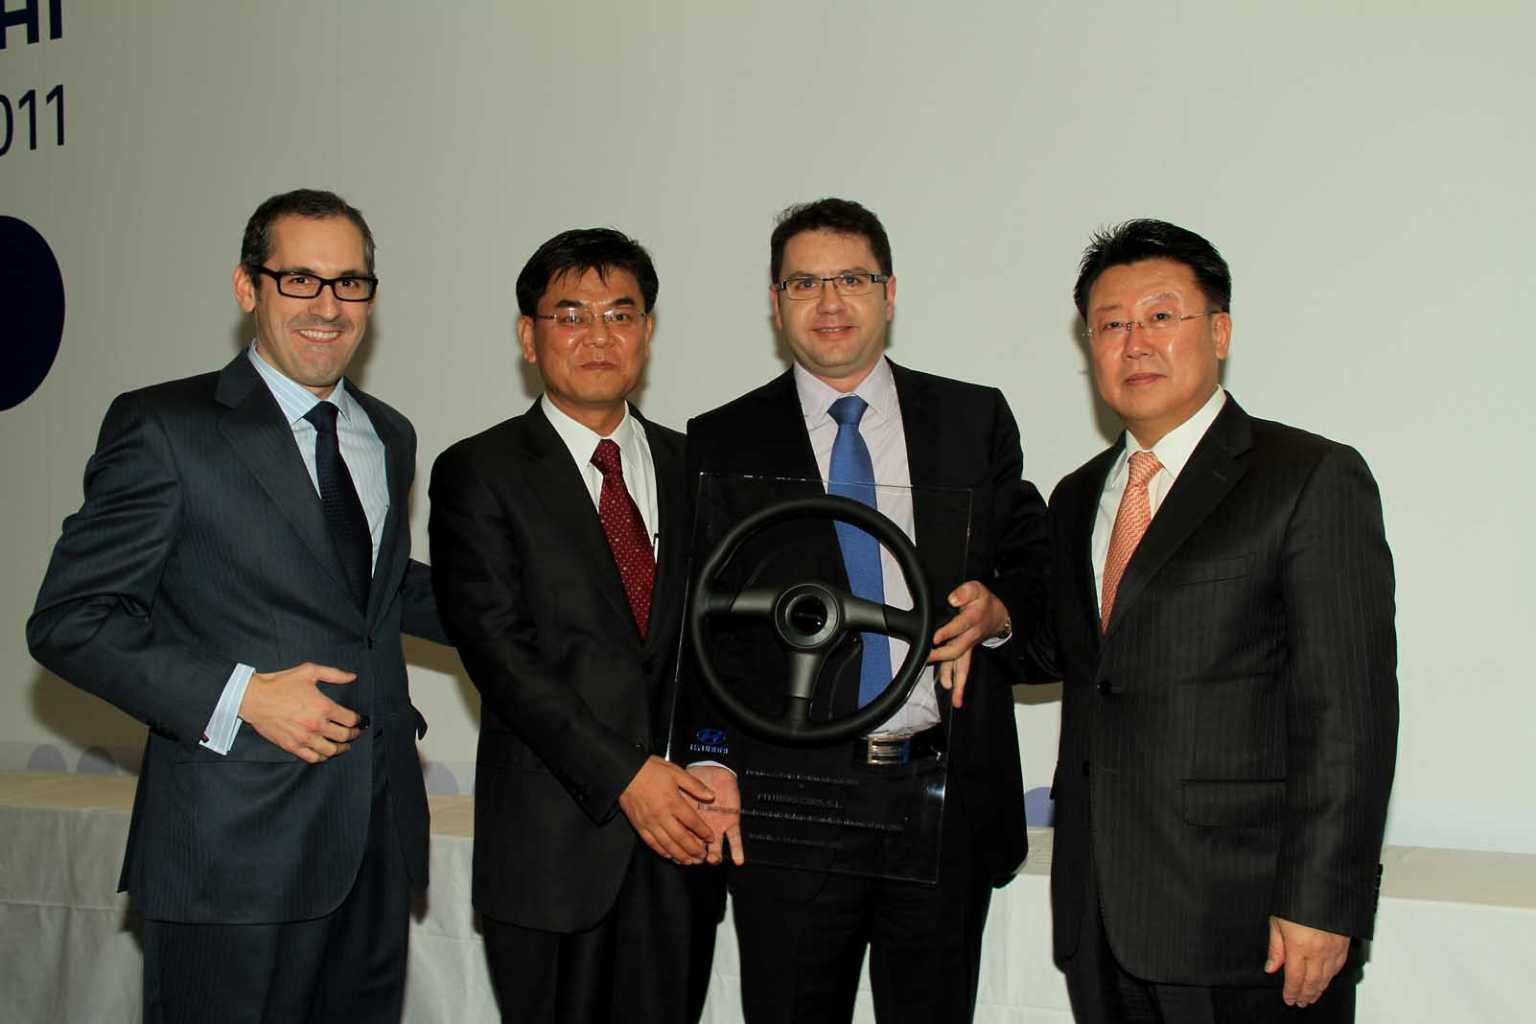 Entrega del premio a la Mejor Gestión Integral del año 2010 a Narciso Ferrer, por parte de los presidentes de Hyundai Europa y Hyundai España.